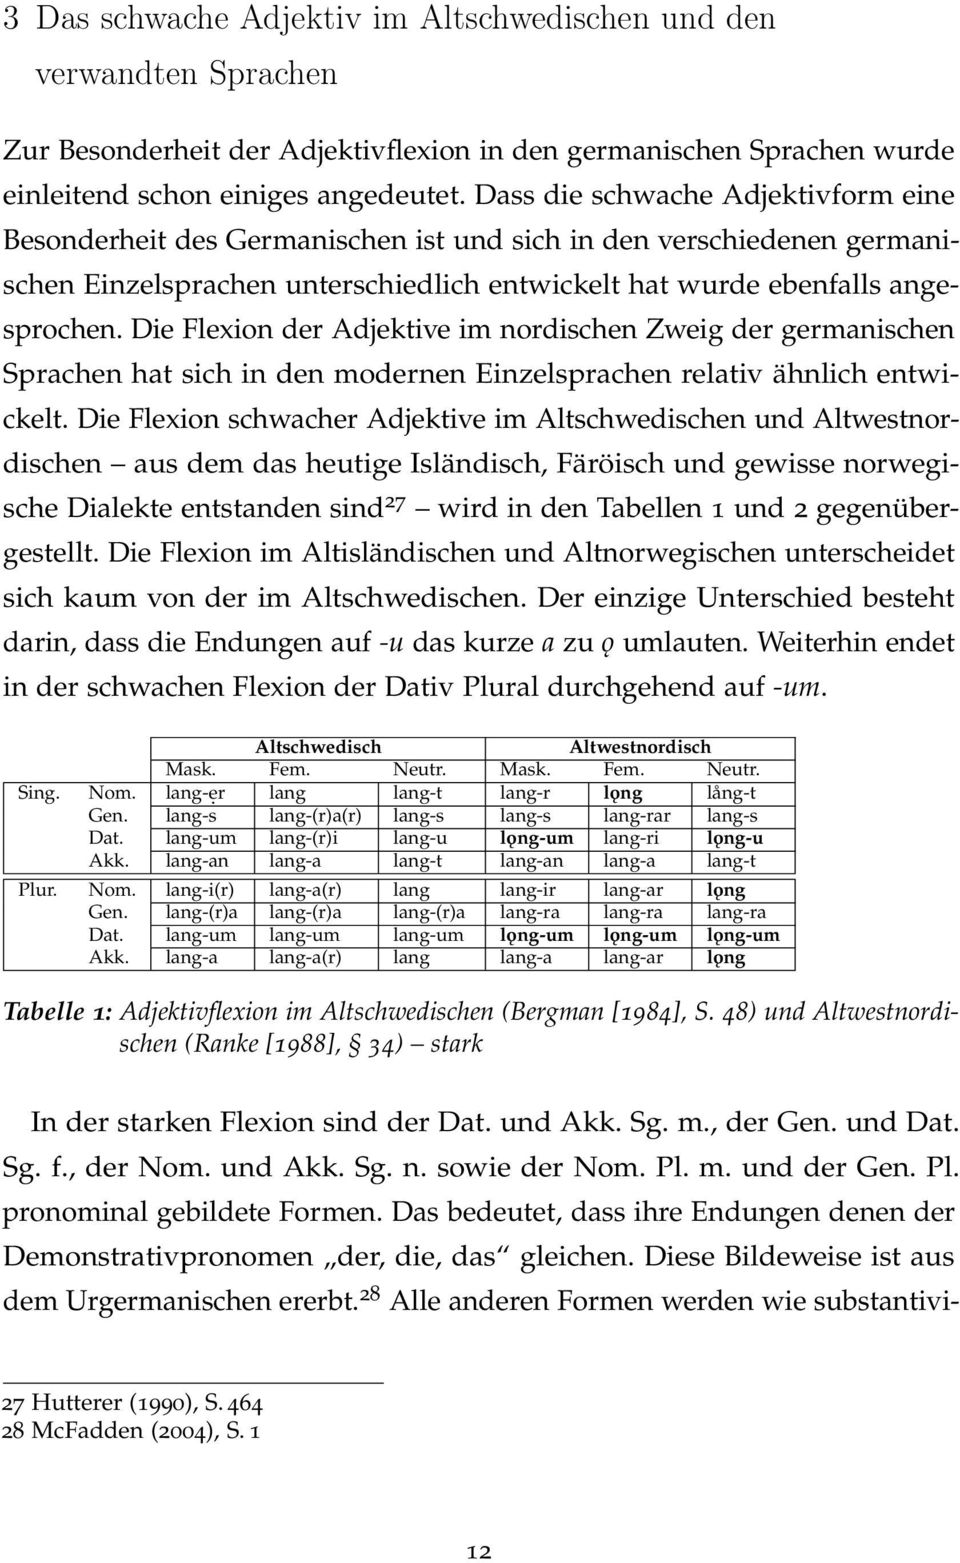 Die Flexion der Adjektive im nordischen Zweig der germanischen Sprachen hat sich in den modernen Einzelsprachen relativ ähnlich entwickelt.